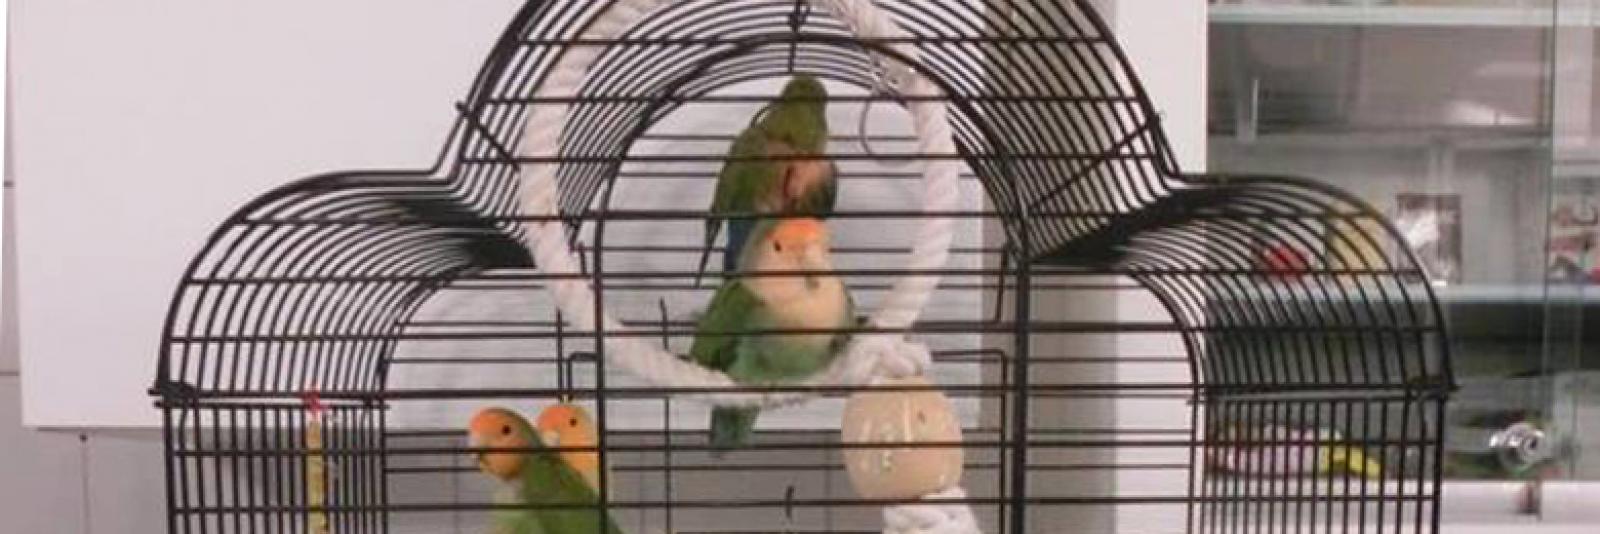 genoeg Los Kwijting Vieze vogelkooi vol agapornissen op straat gedumpt in Amsterdam - NH Nieuws